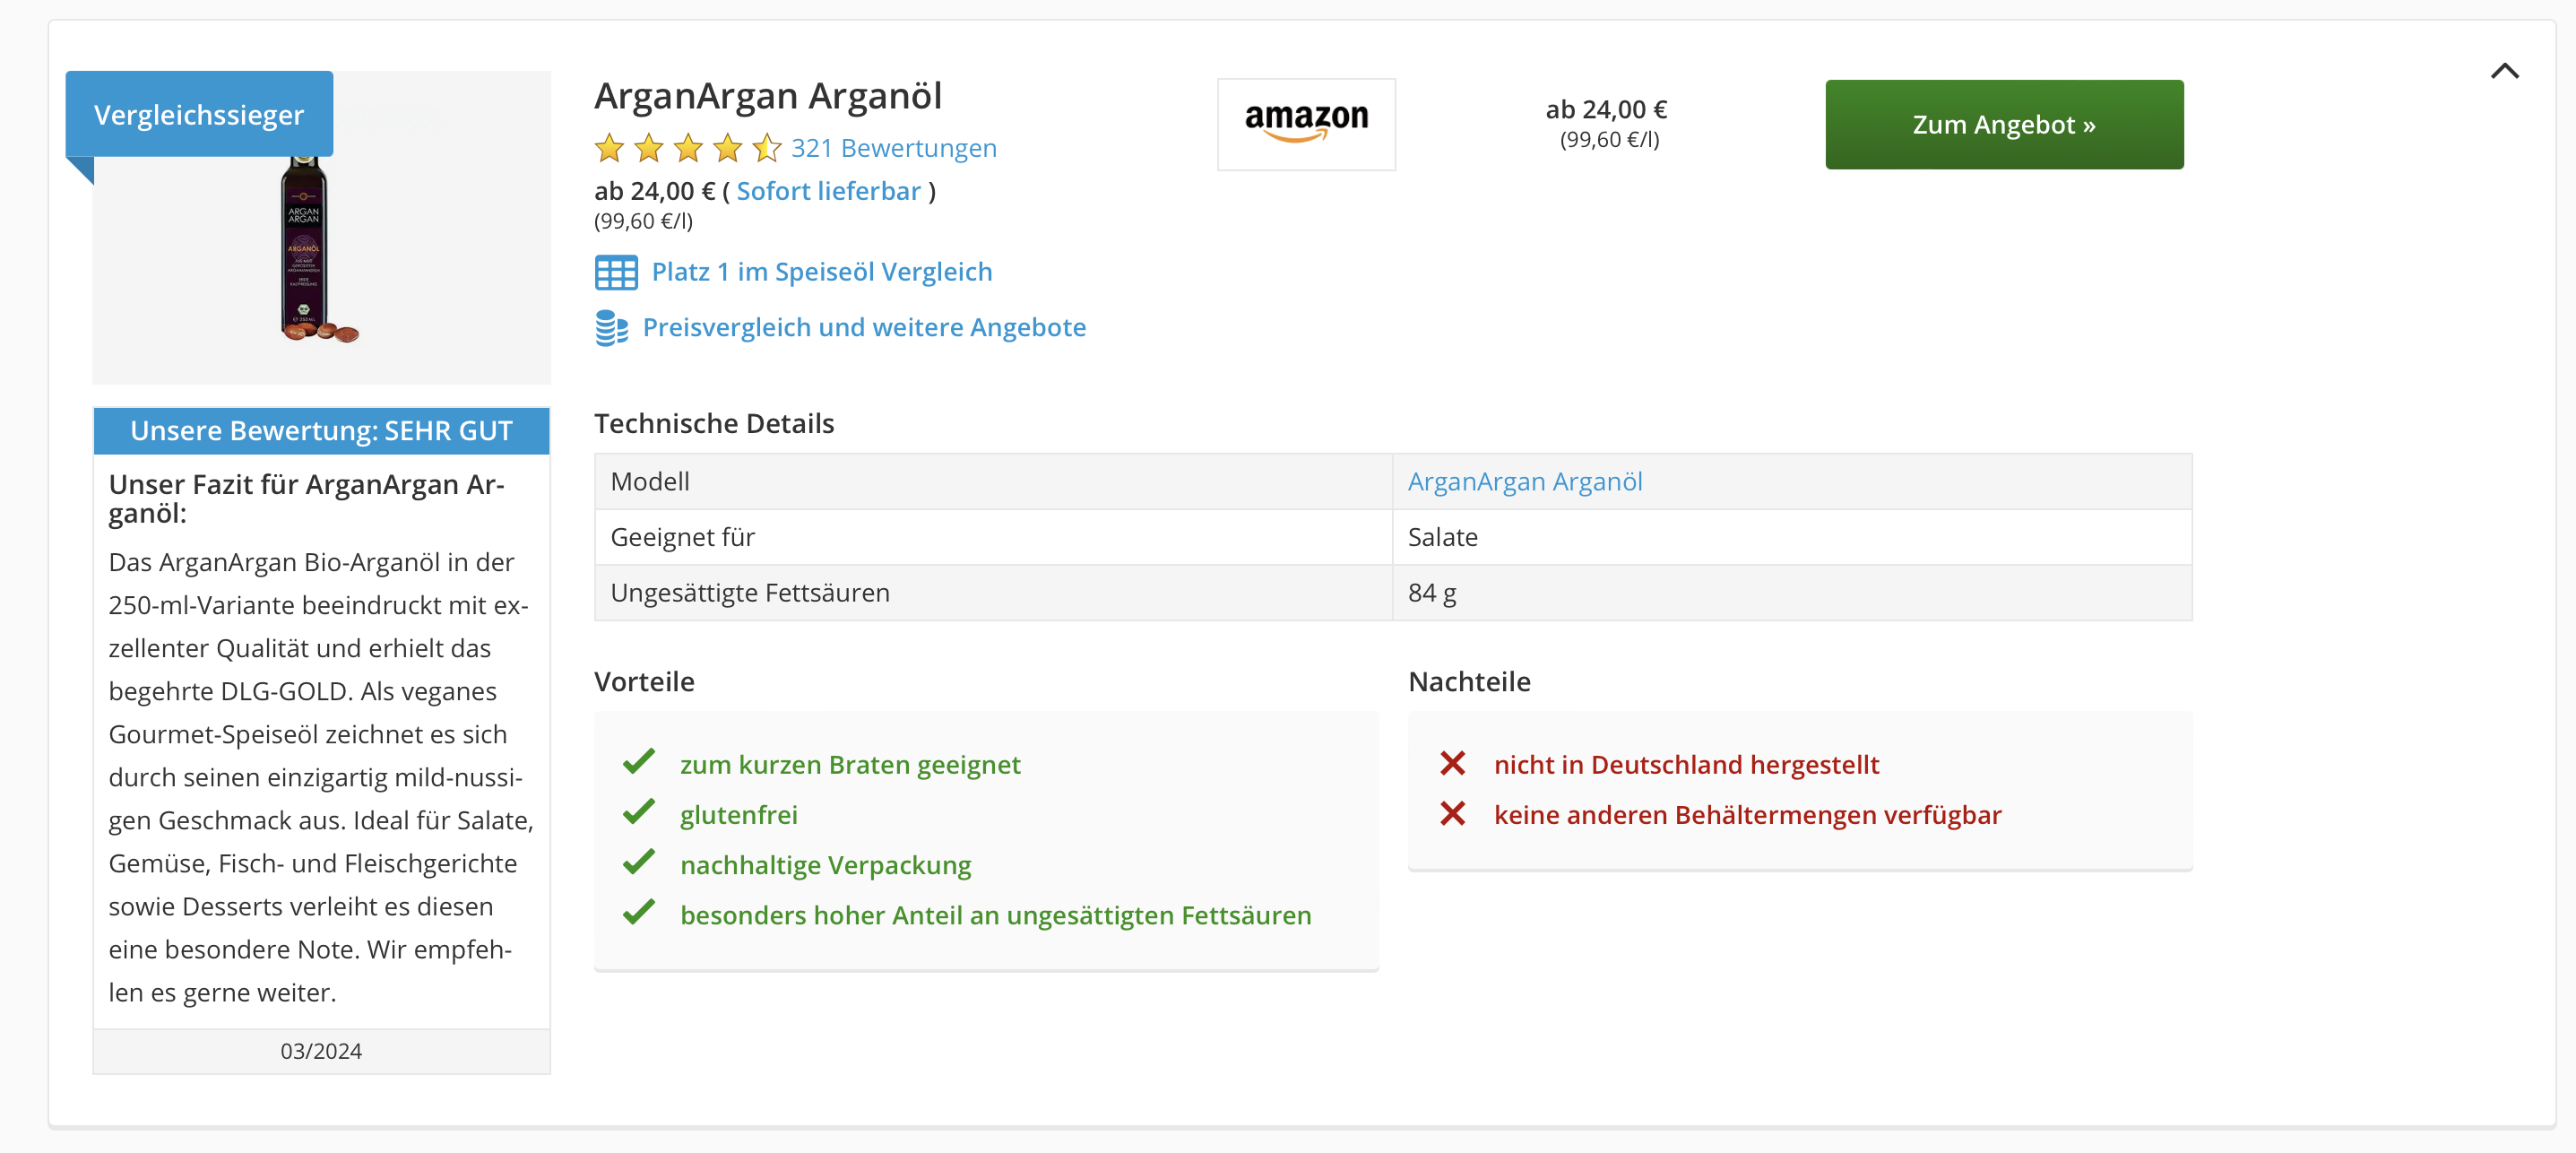 ARGANARGAN-Arganoel-Vergleich-Test-SEHR-GUT